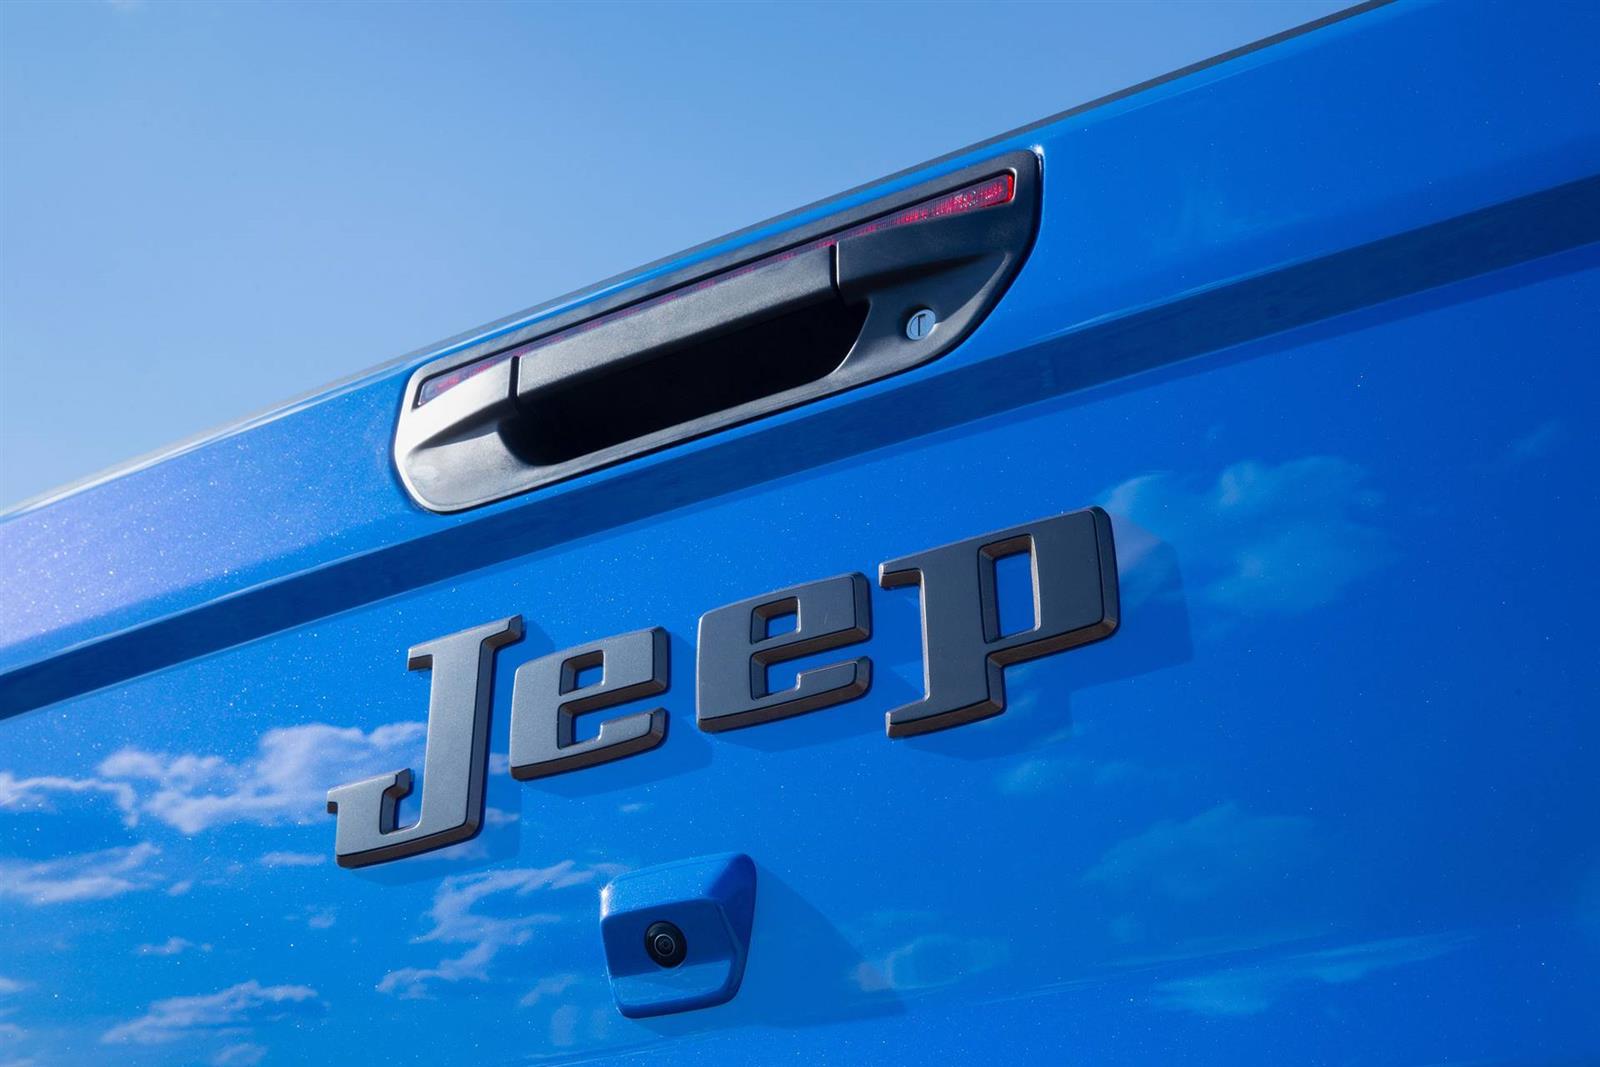 2019 Jeep J6 Concept